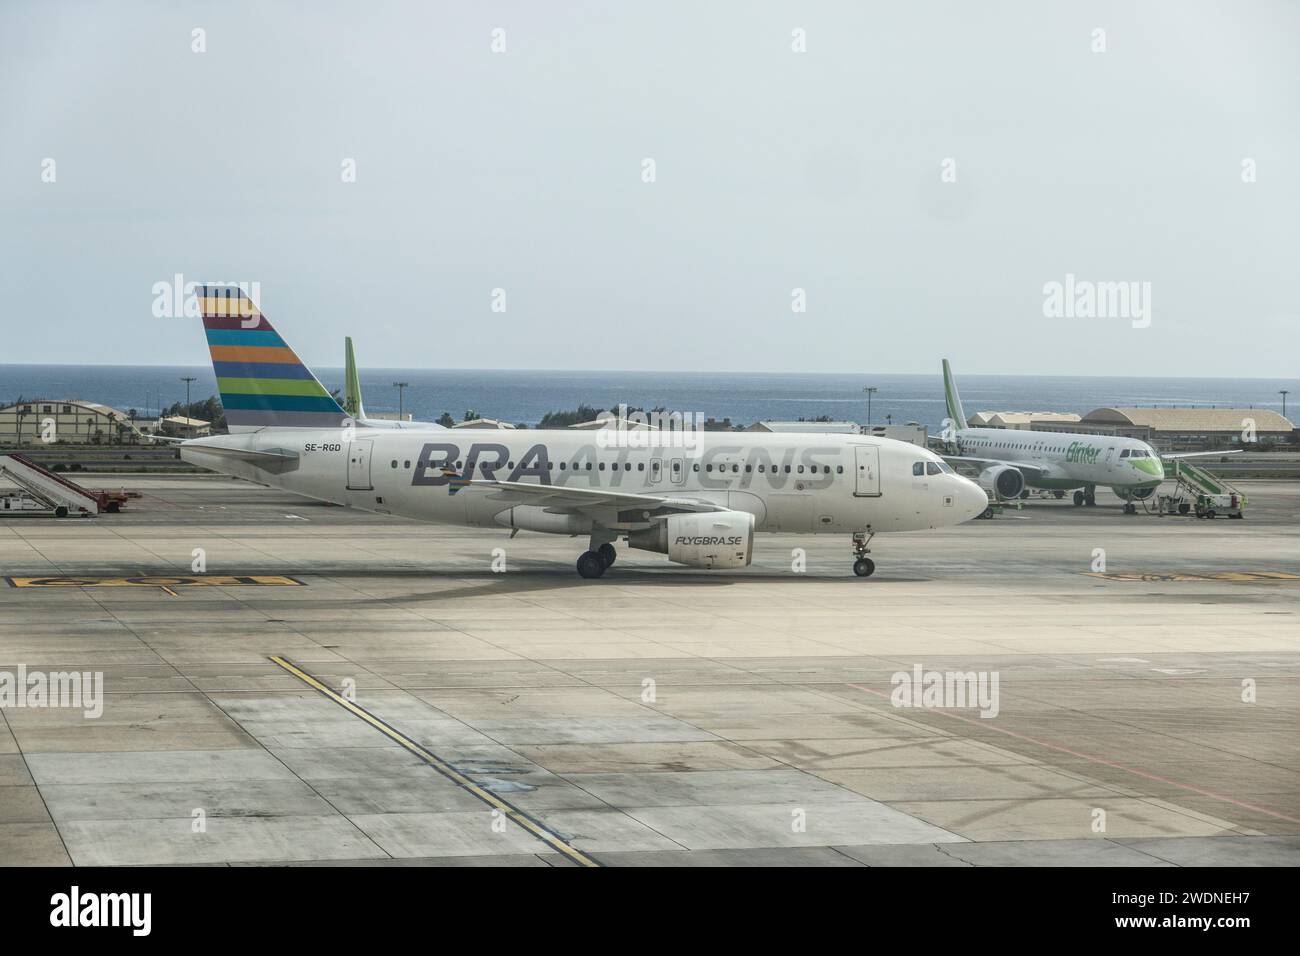 Passagiermaschine der schwedischen Charterfluggesellschaft Braathens Regional Aviation, Gran Canaria, Kanarische Inseln, Spanien Stockfoto